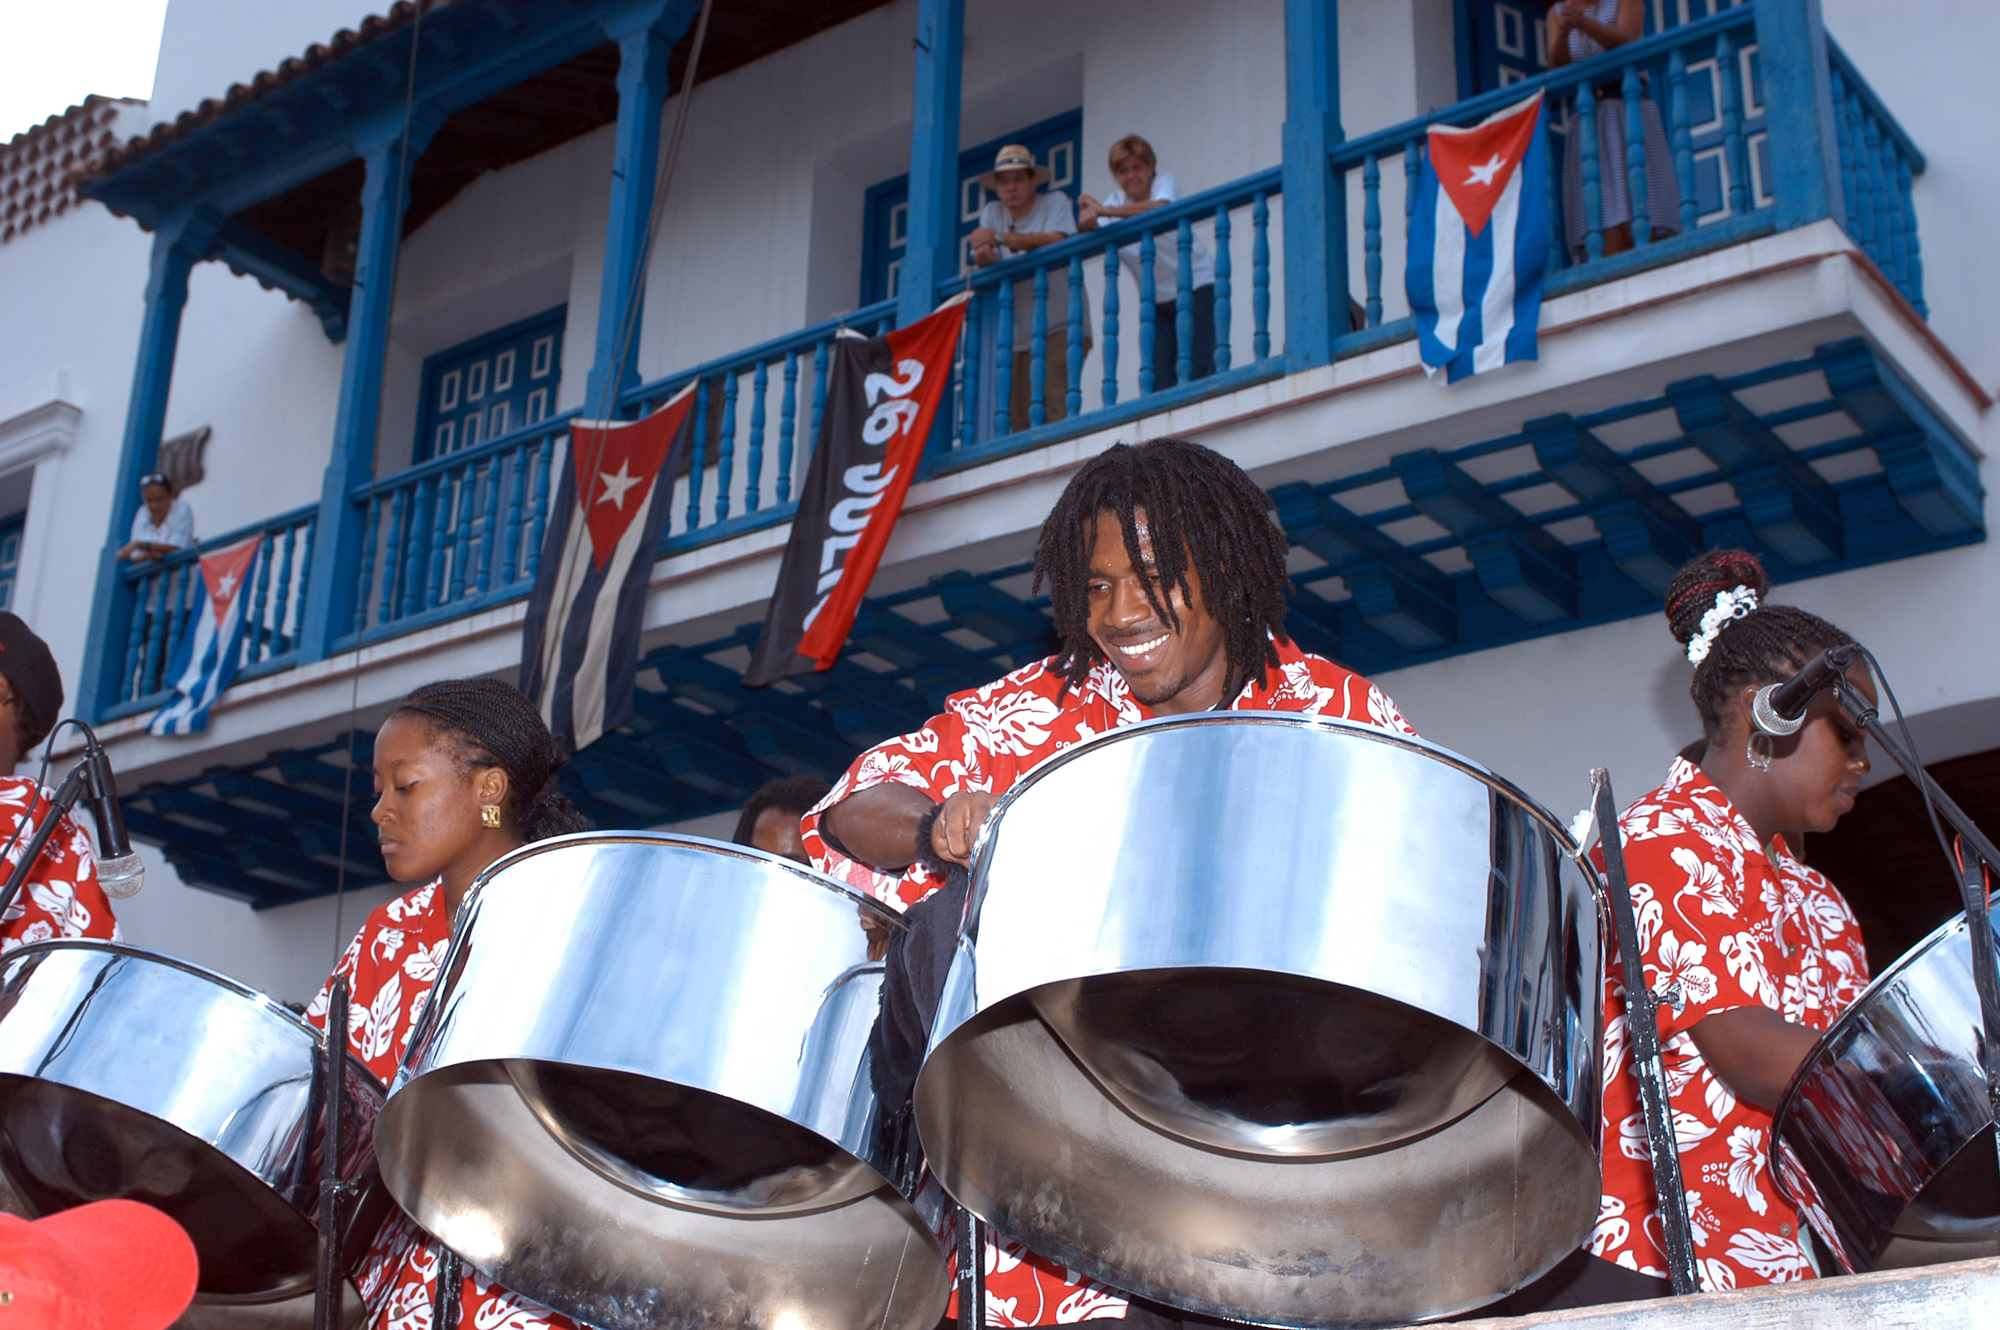 Steelpan Musiker in Cuba